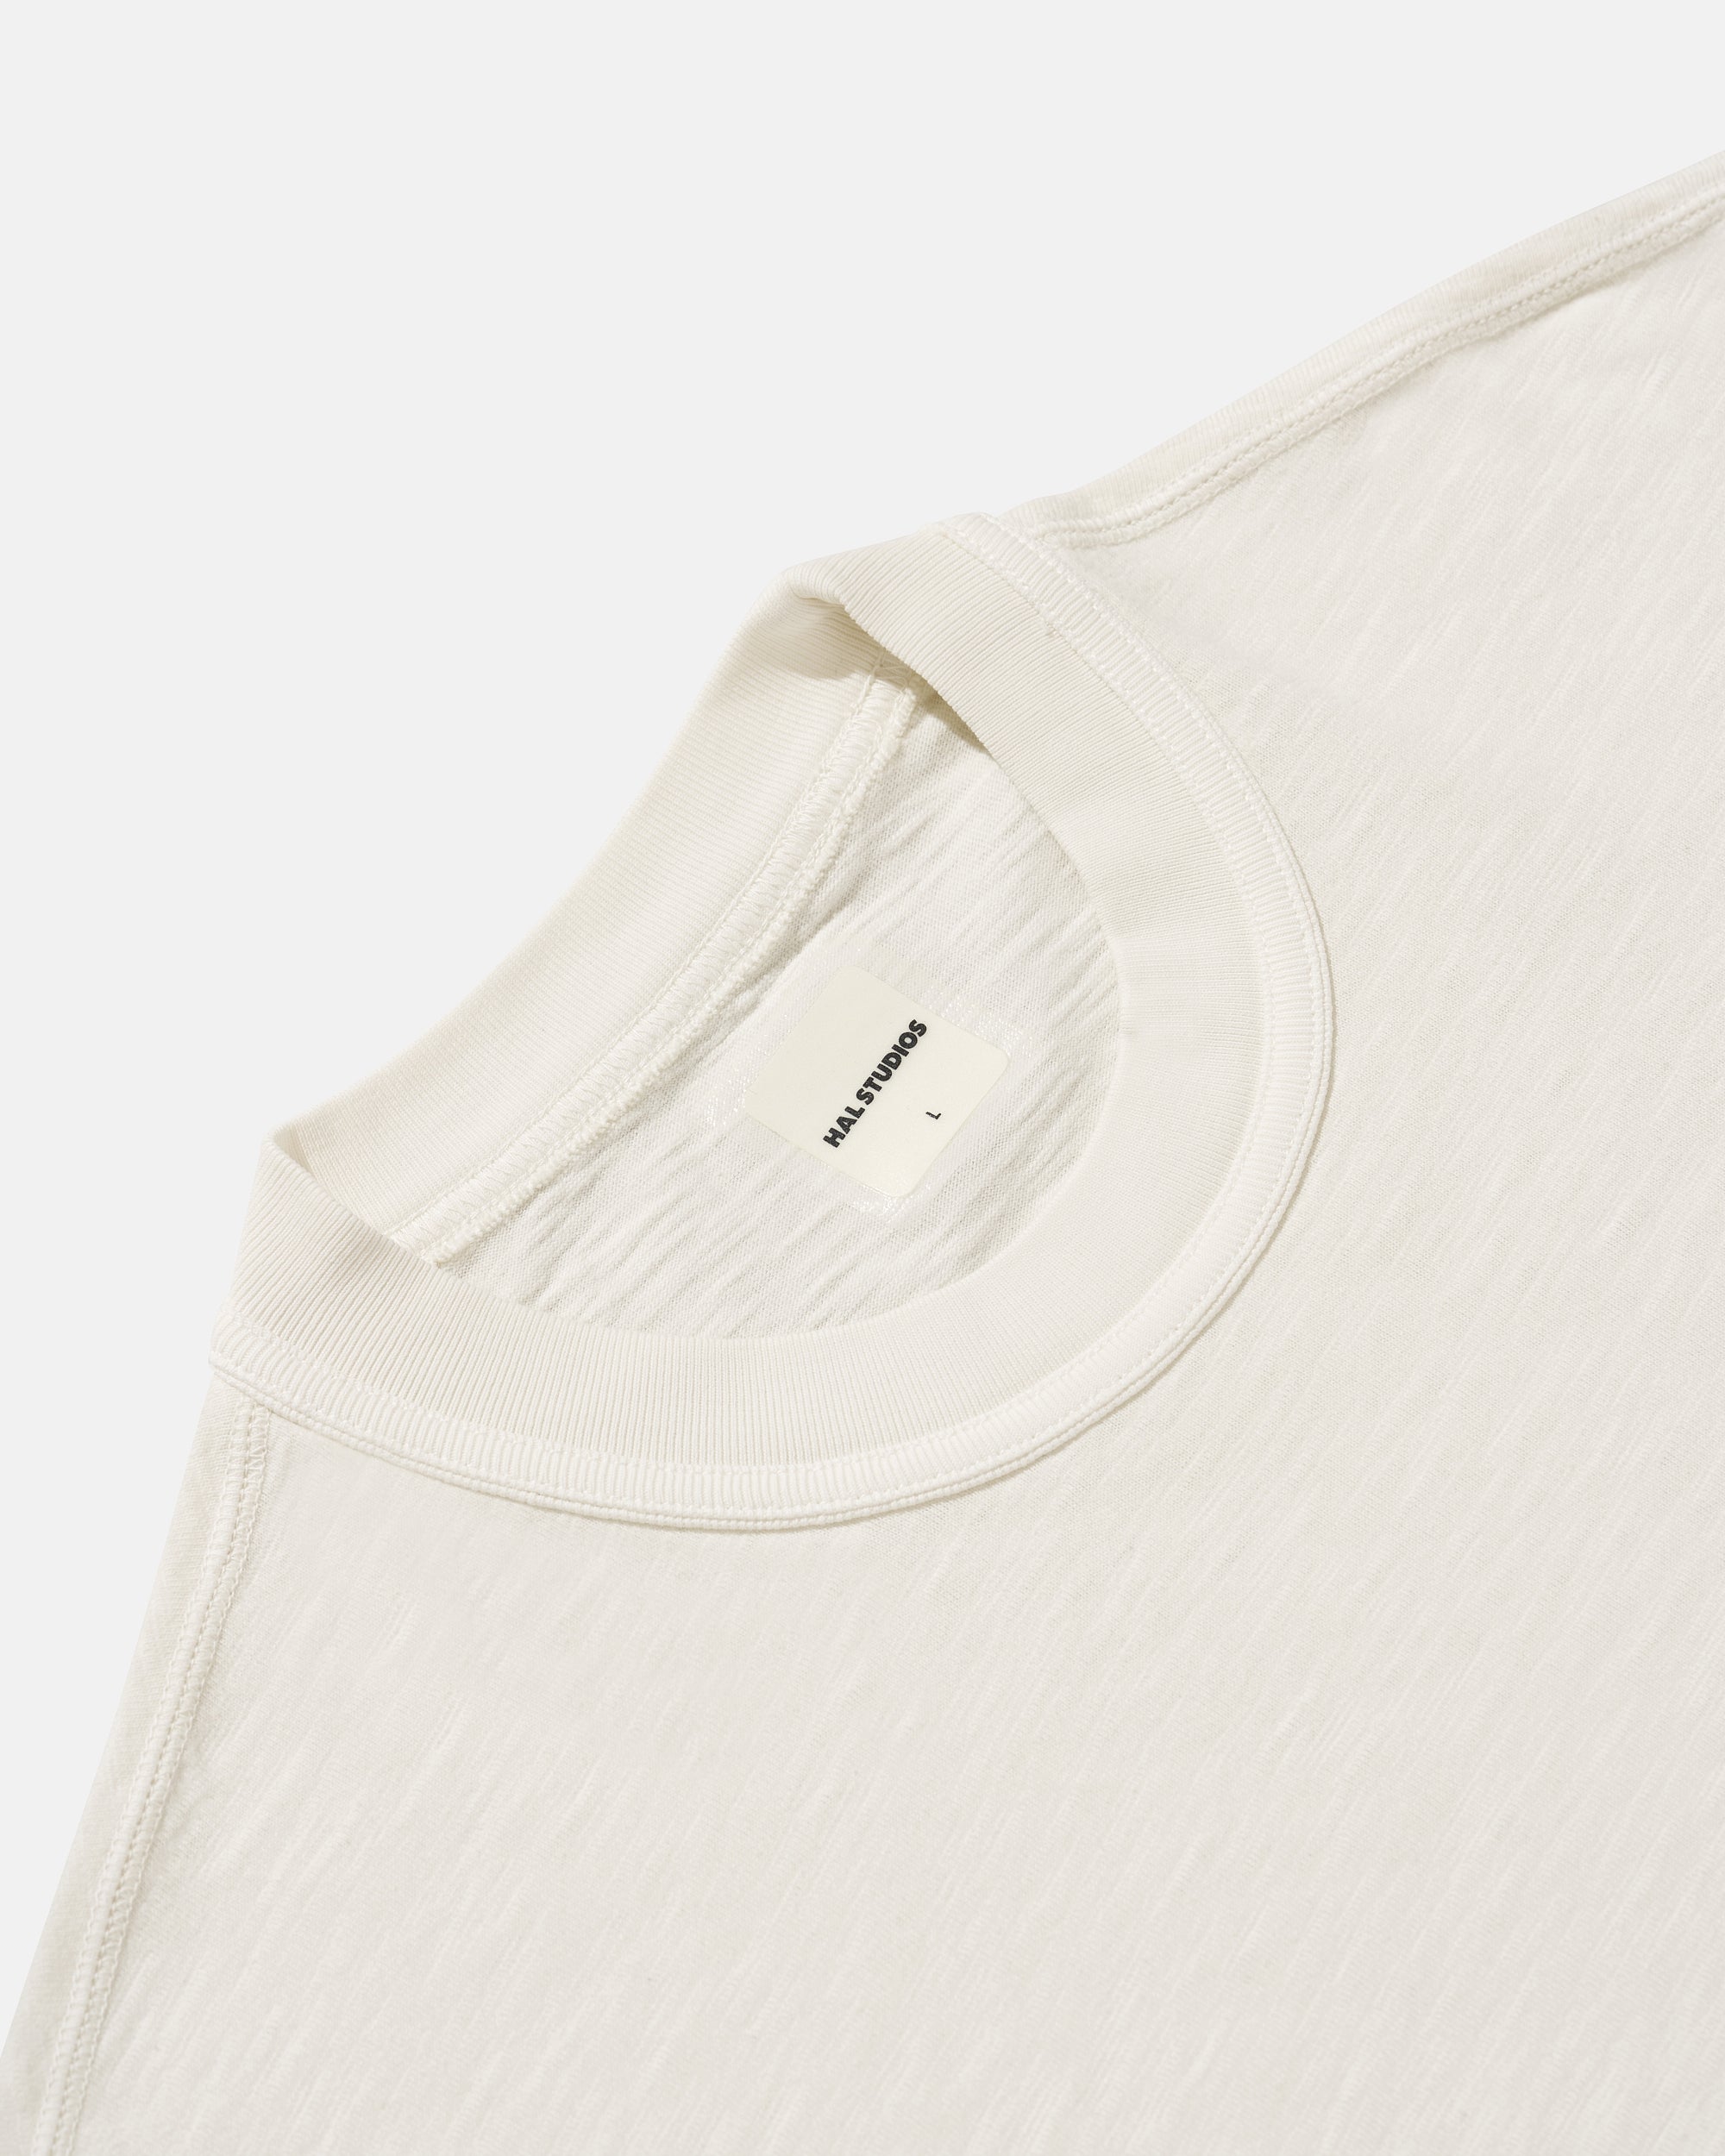 Studio Slub T-Shirt - Off White